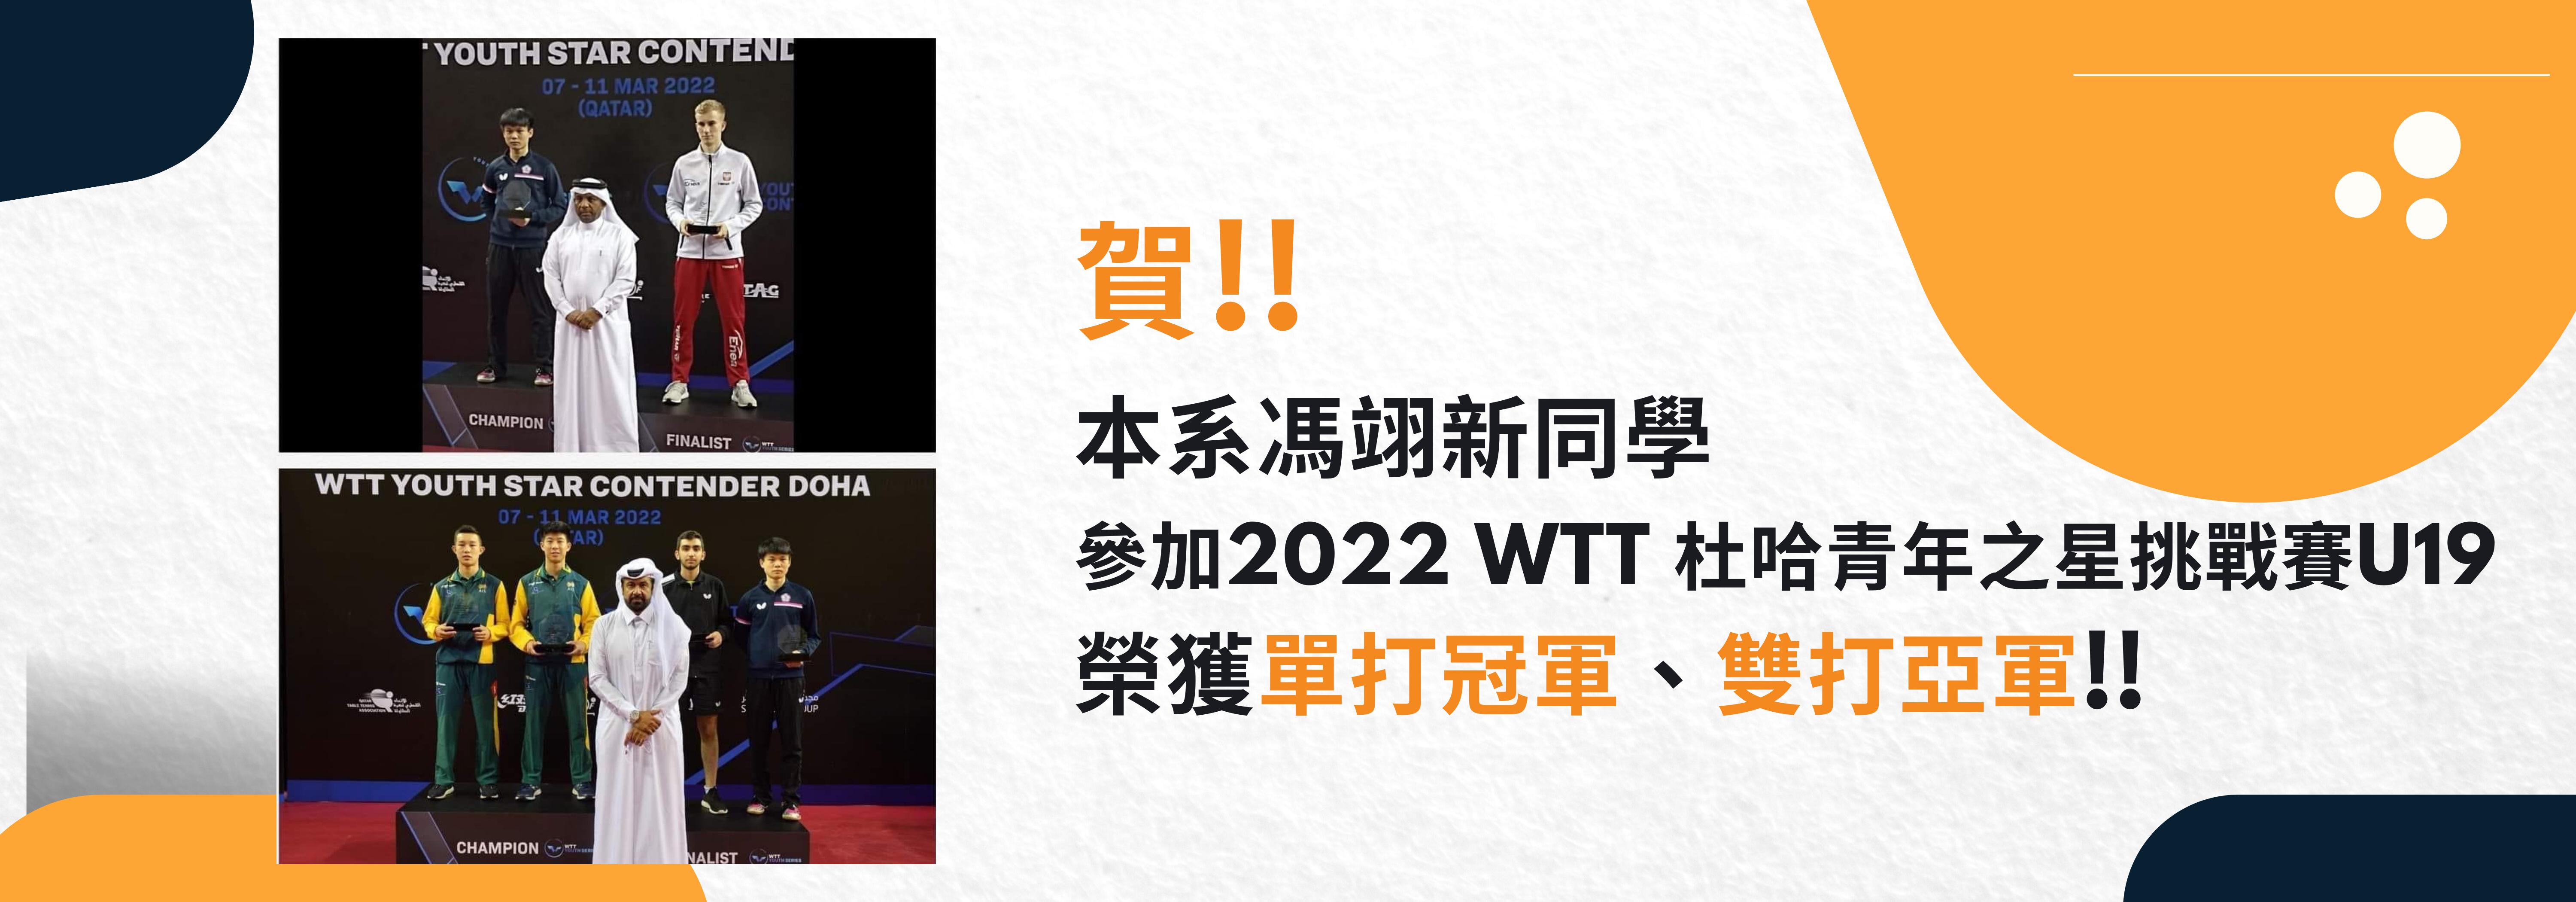 馮翊新參加「2022 WTT杜哈青年之星挑戰賽U19」榮獲單打冠軍、雙打亞軍